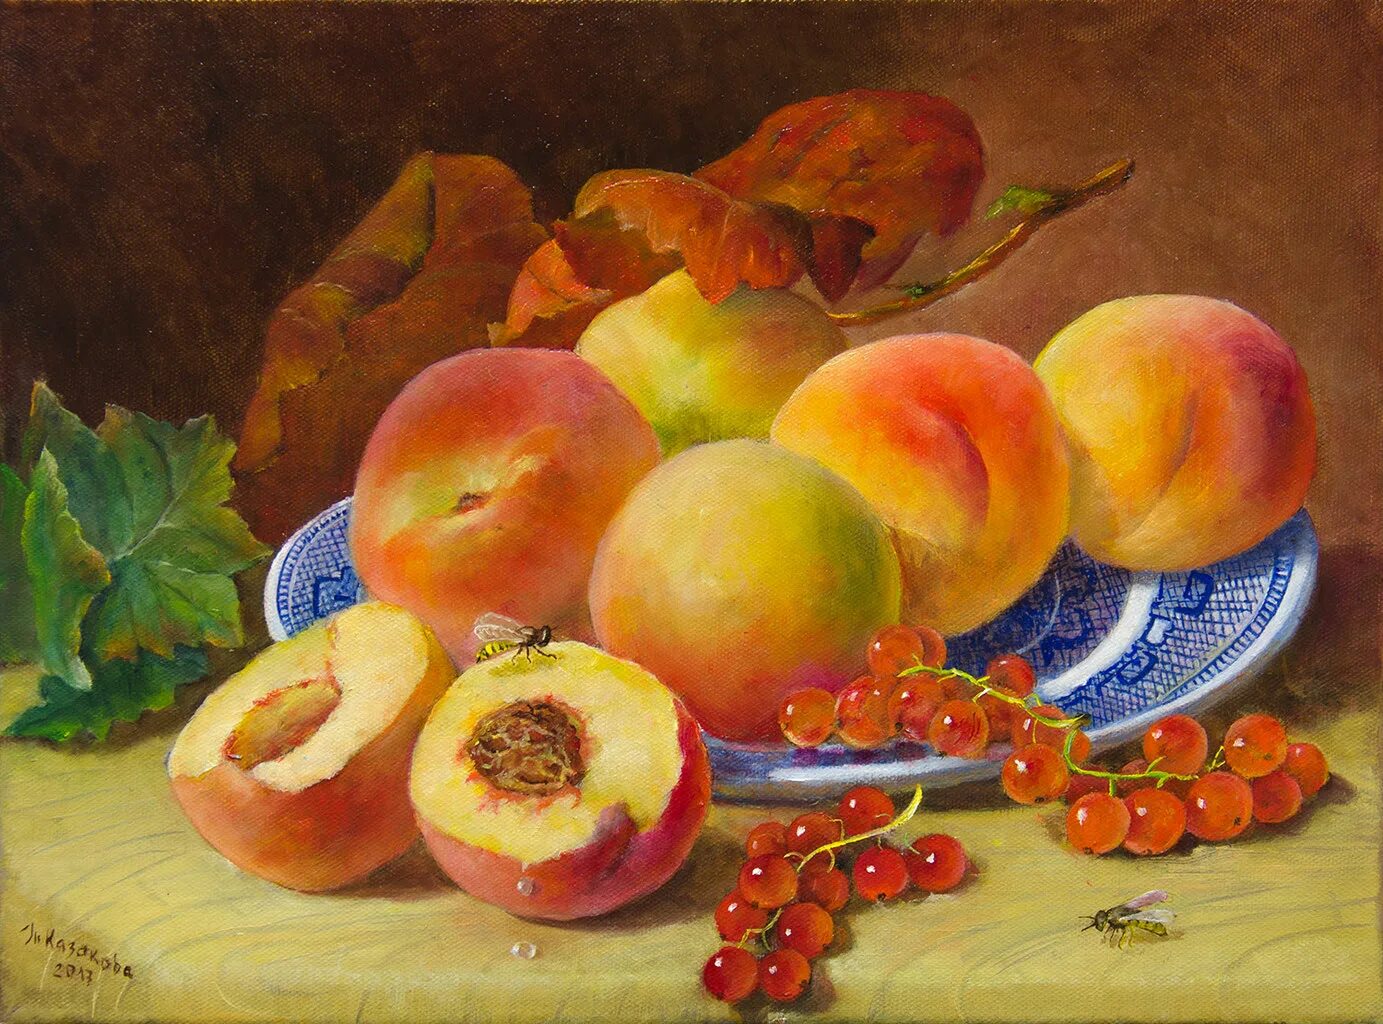 Художник Eloise Harriet Stannard. 2 11 всех фруктов составляют персики